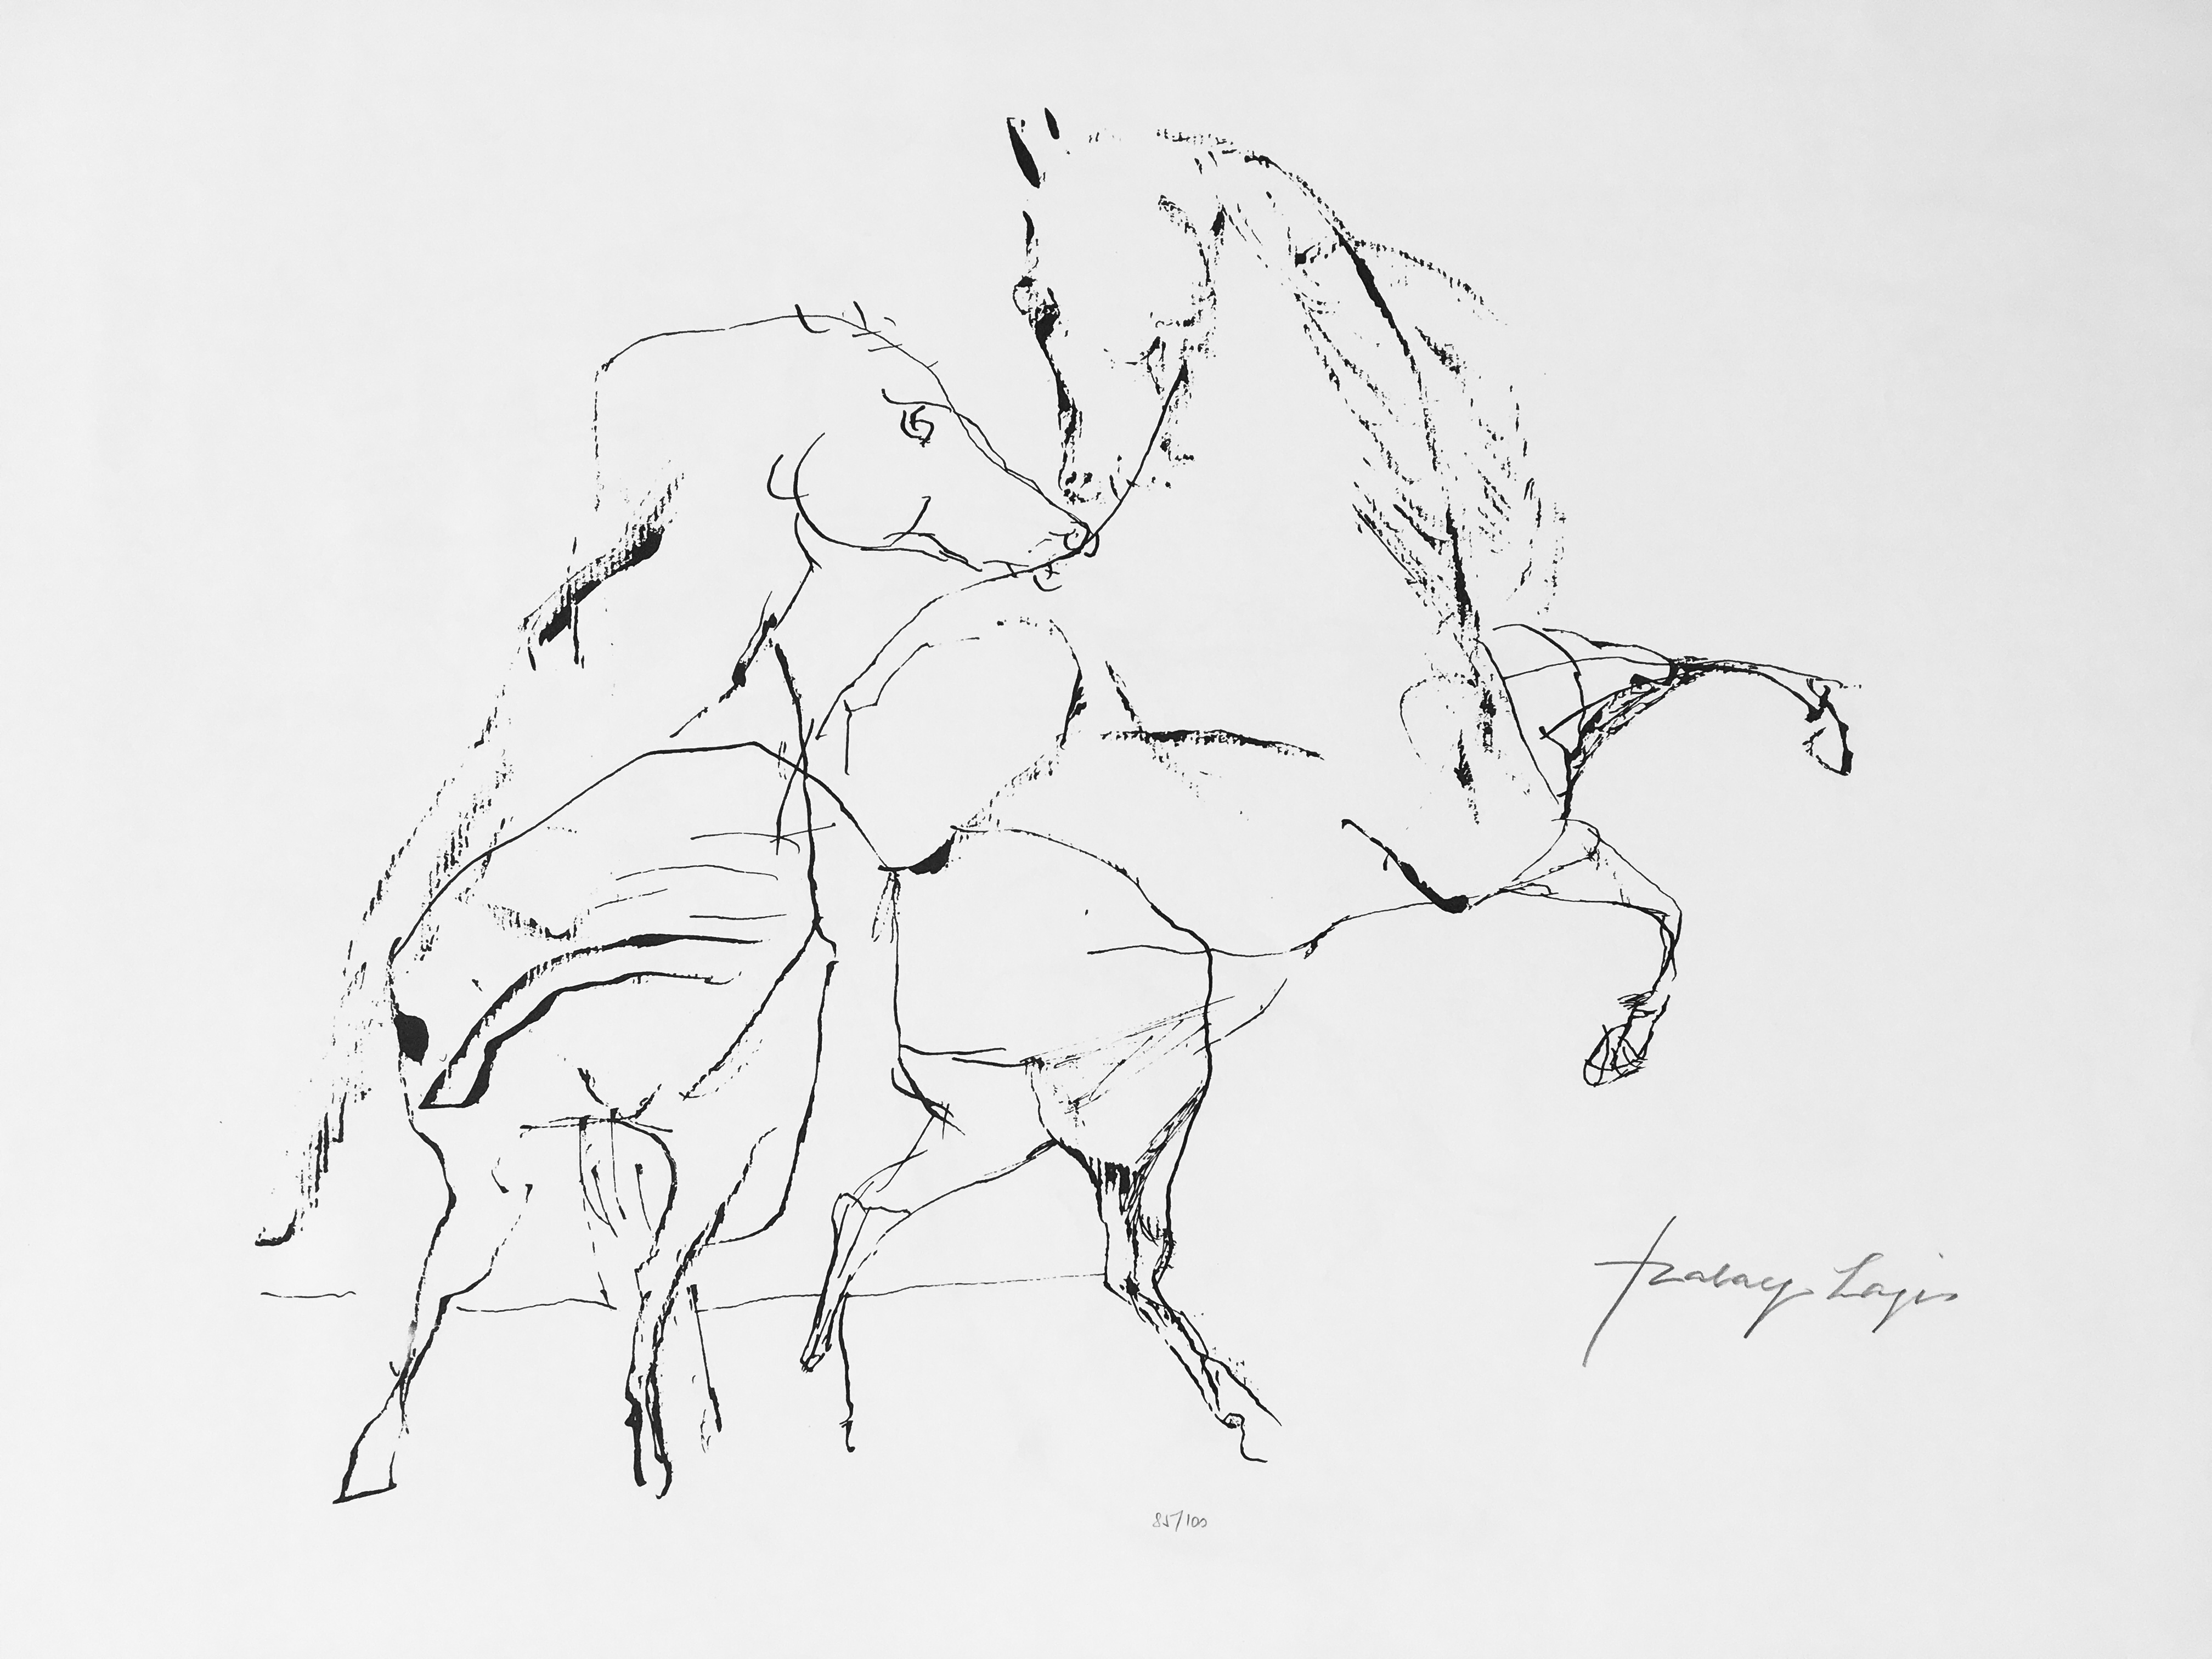 Szalay, Lajos: Horses